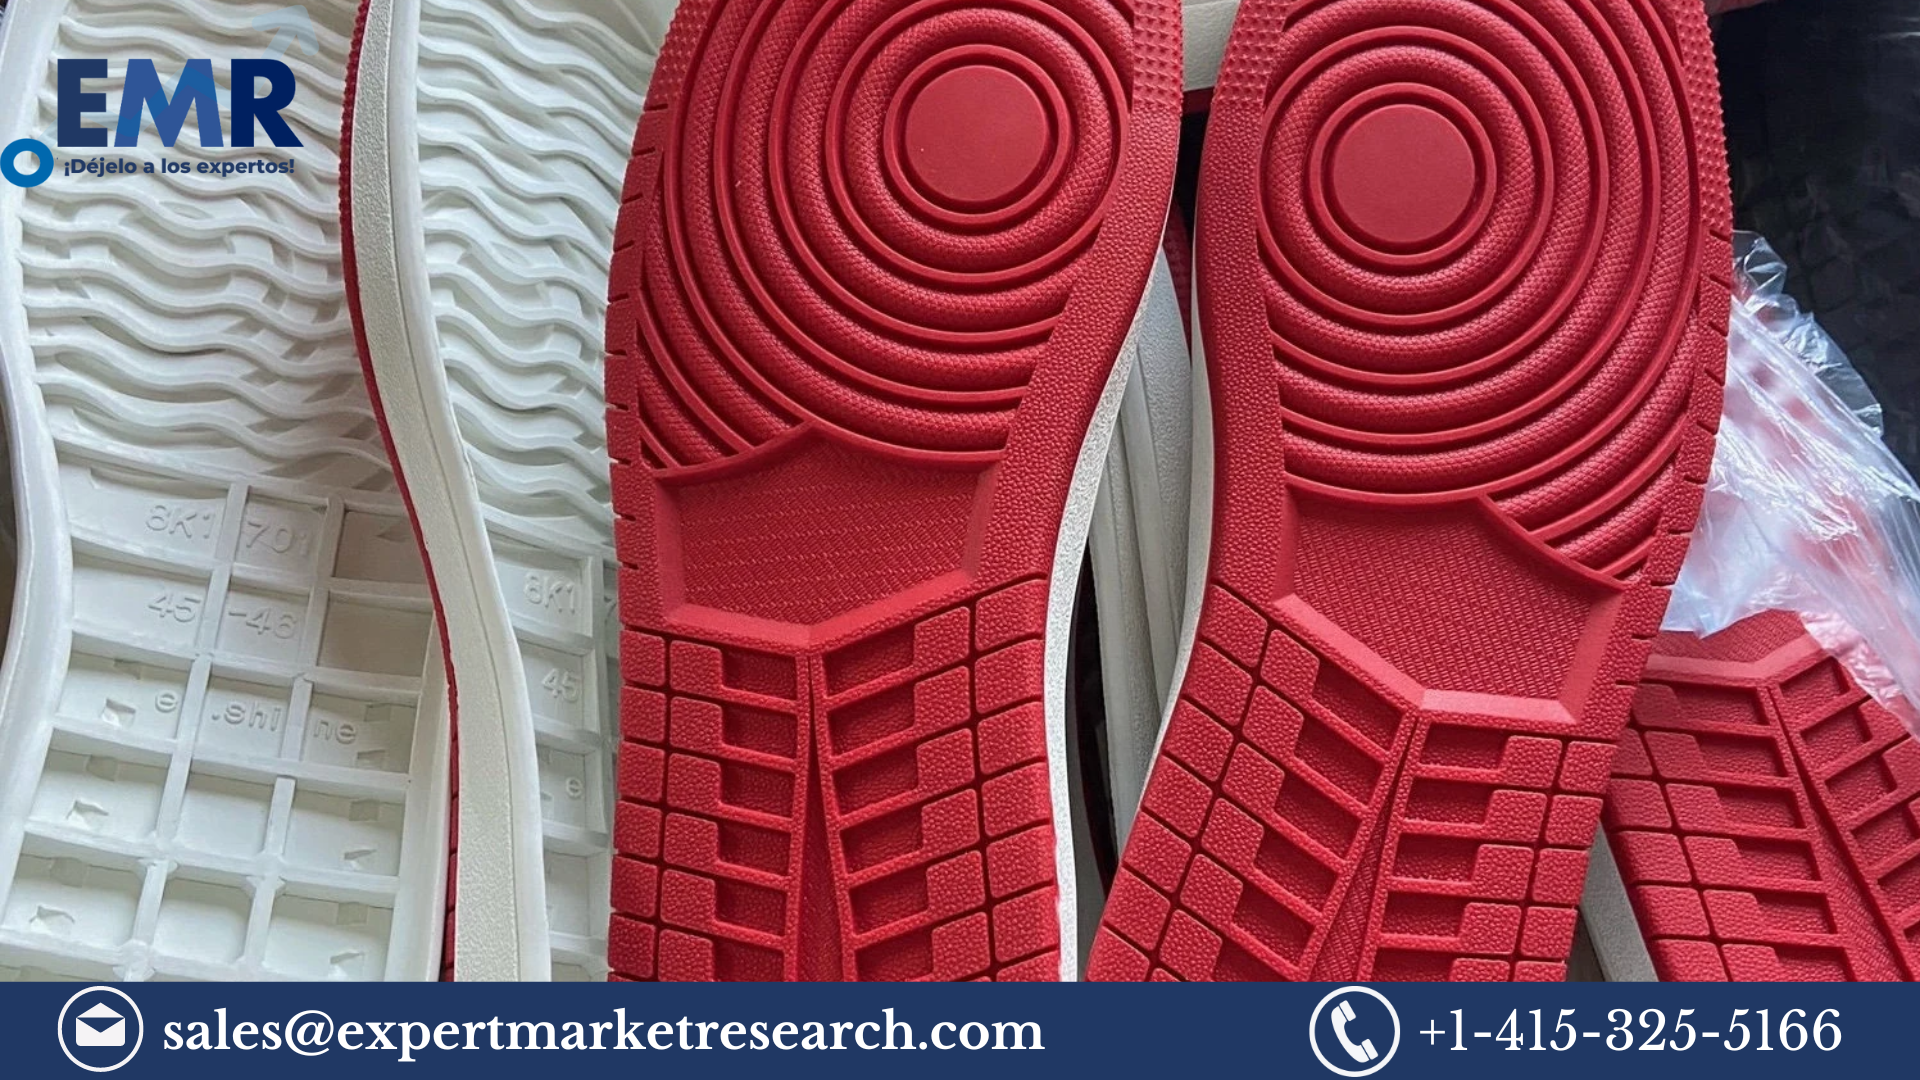 Footwear Sole Material Market